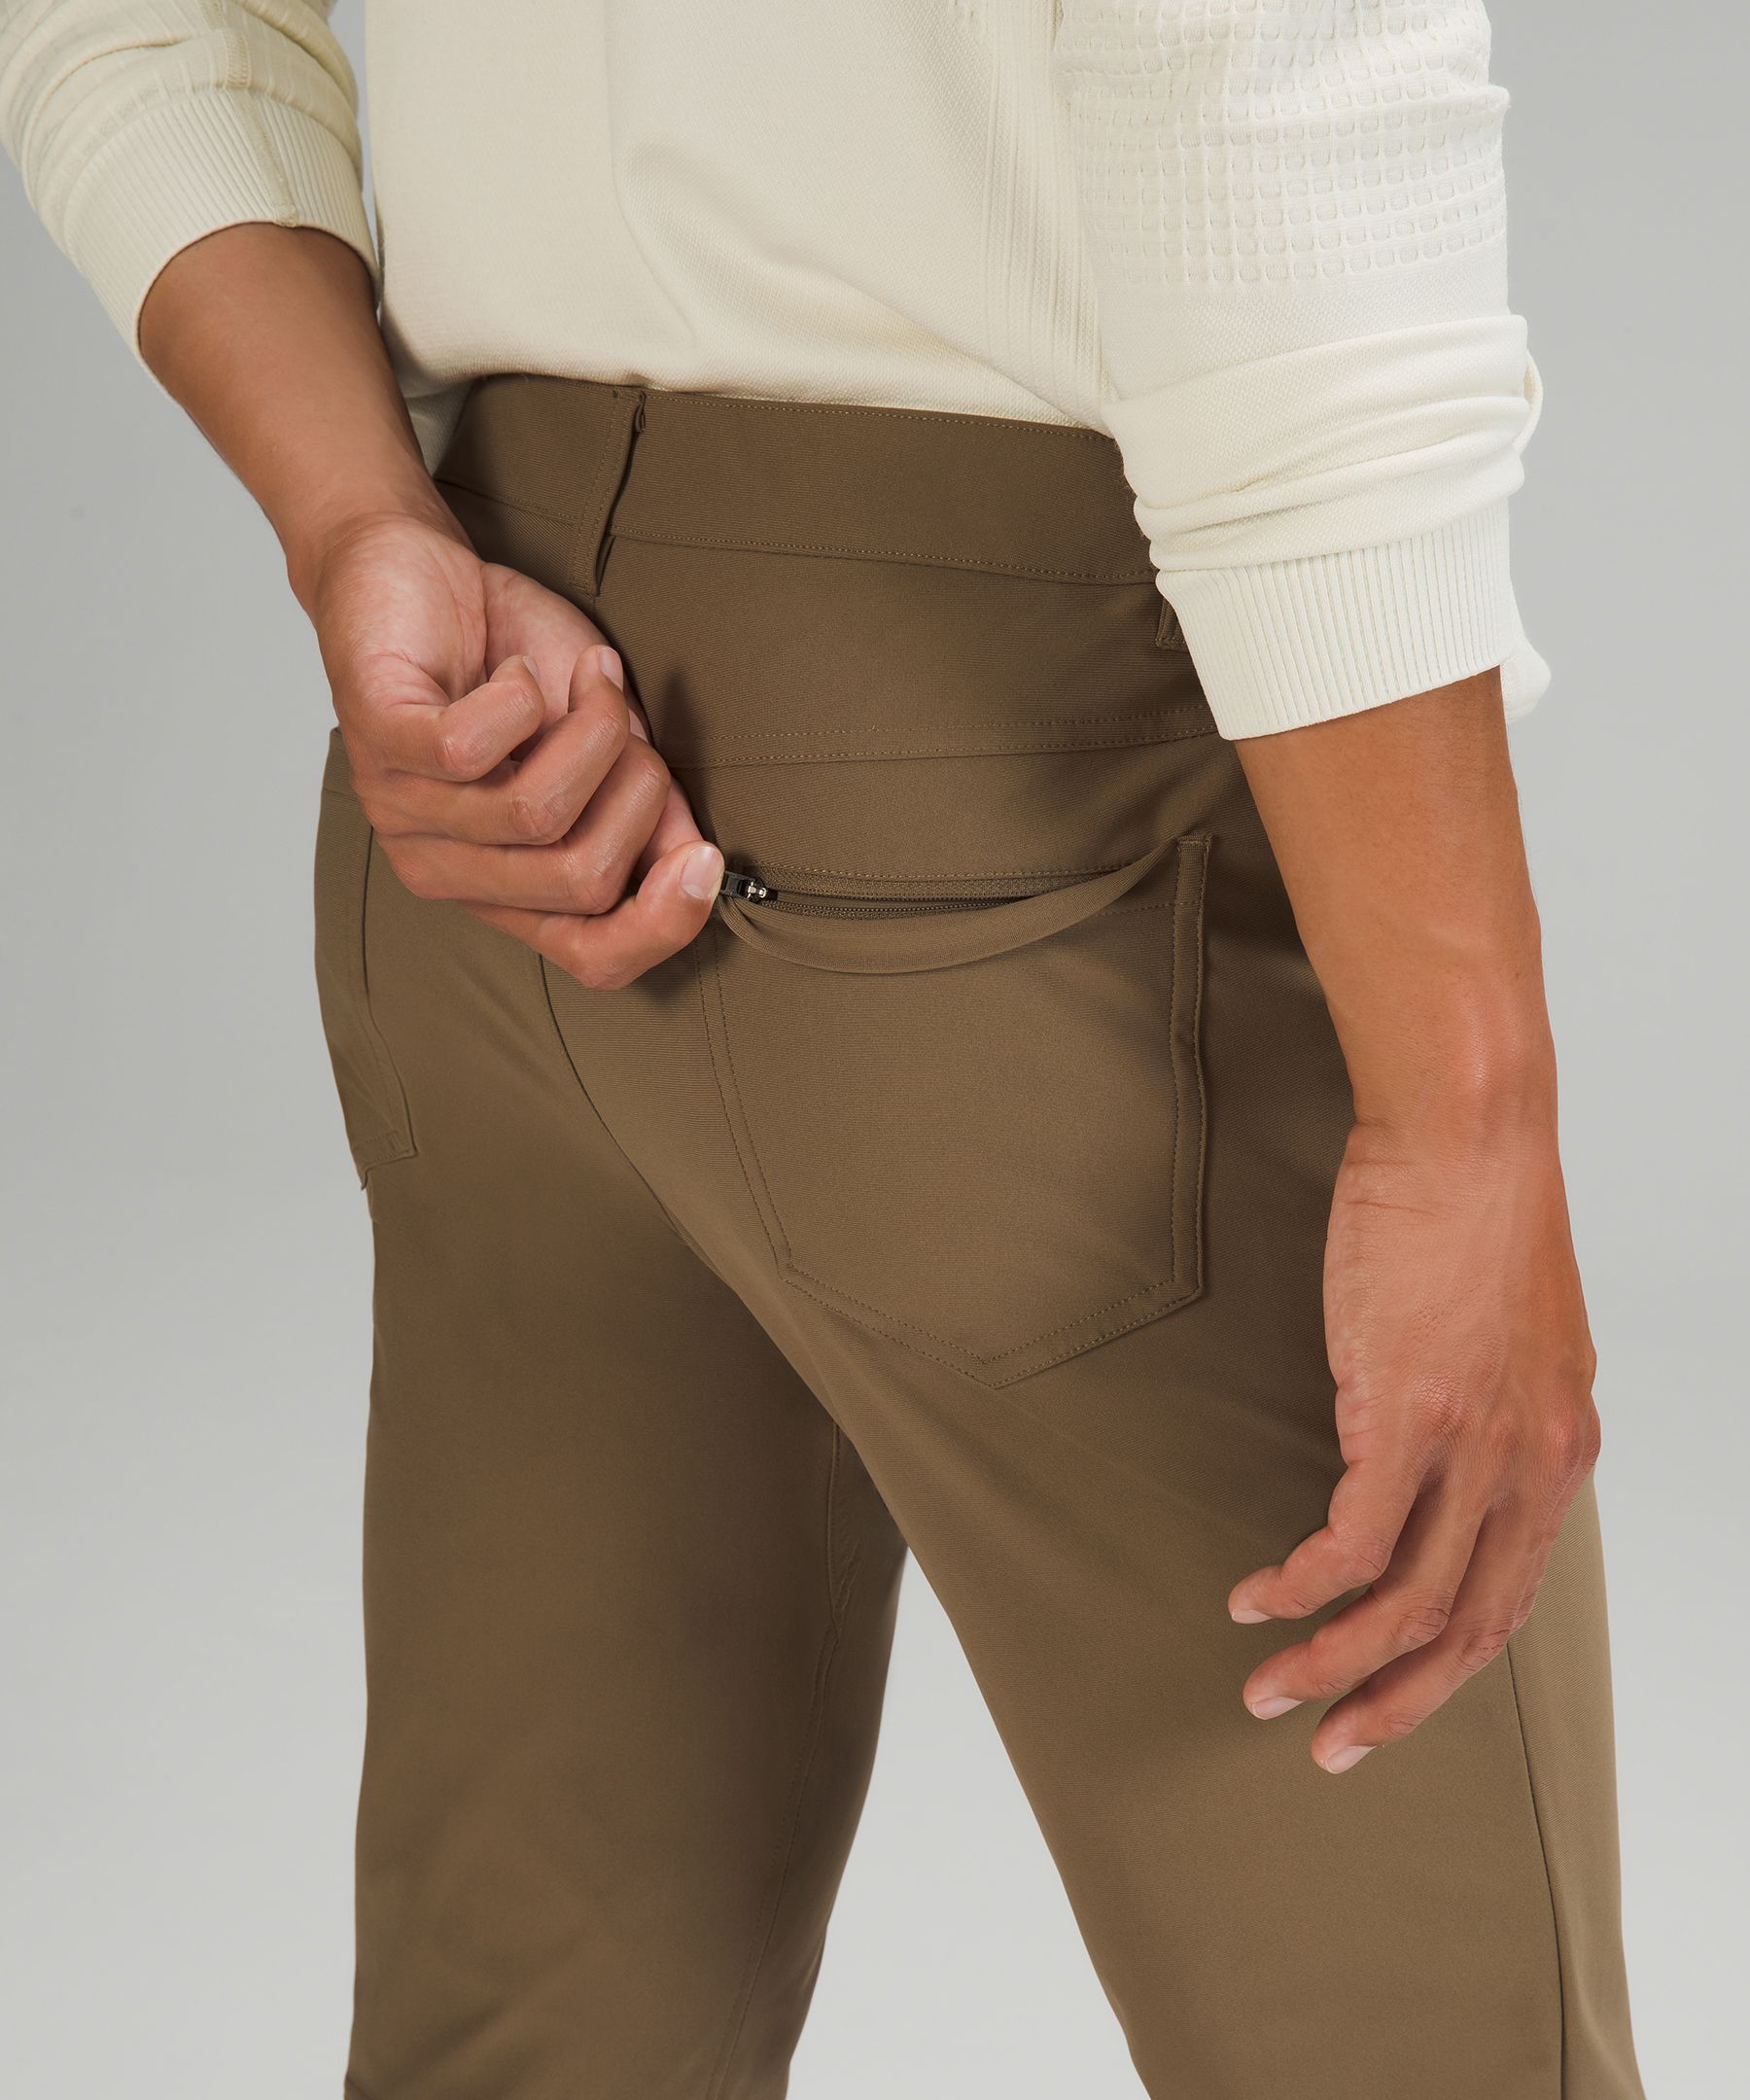 Lululemon athletica ABC Slim-Fit 5 Pocket Pant 37 *Warpstreme, Men's  Trousers